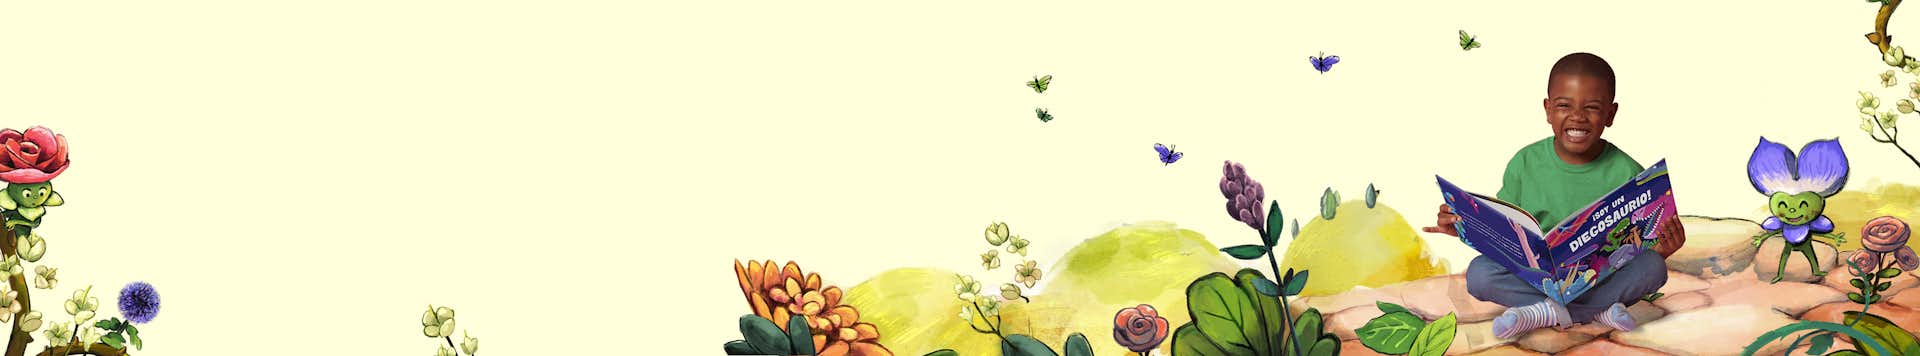 libro de lectura infantil con ilustraciones de flores y vegetación